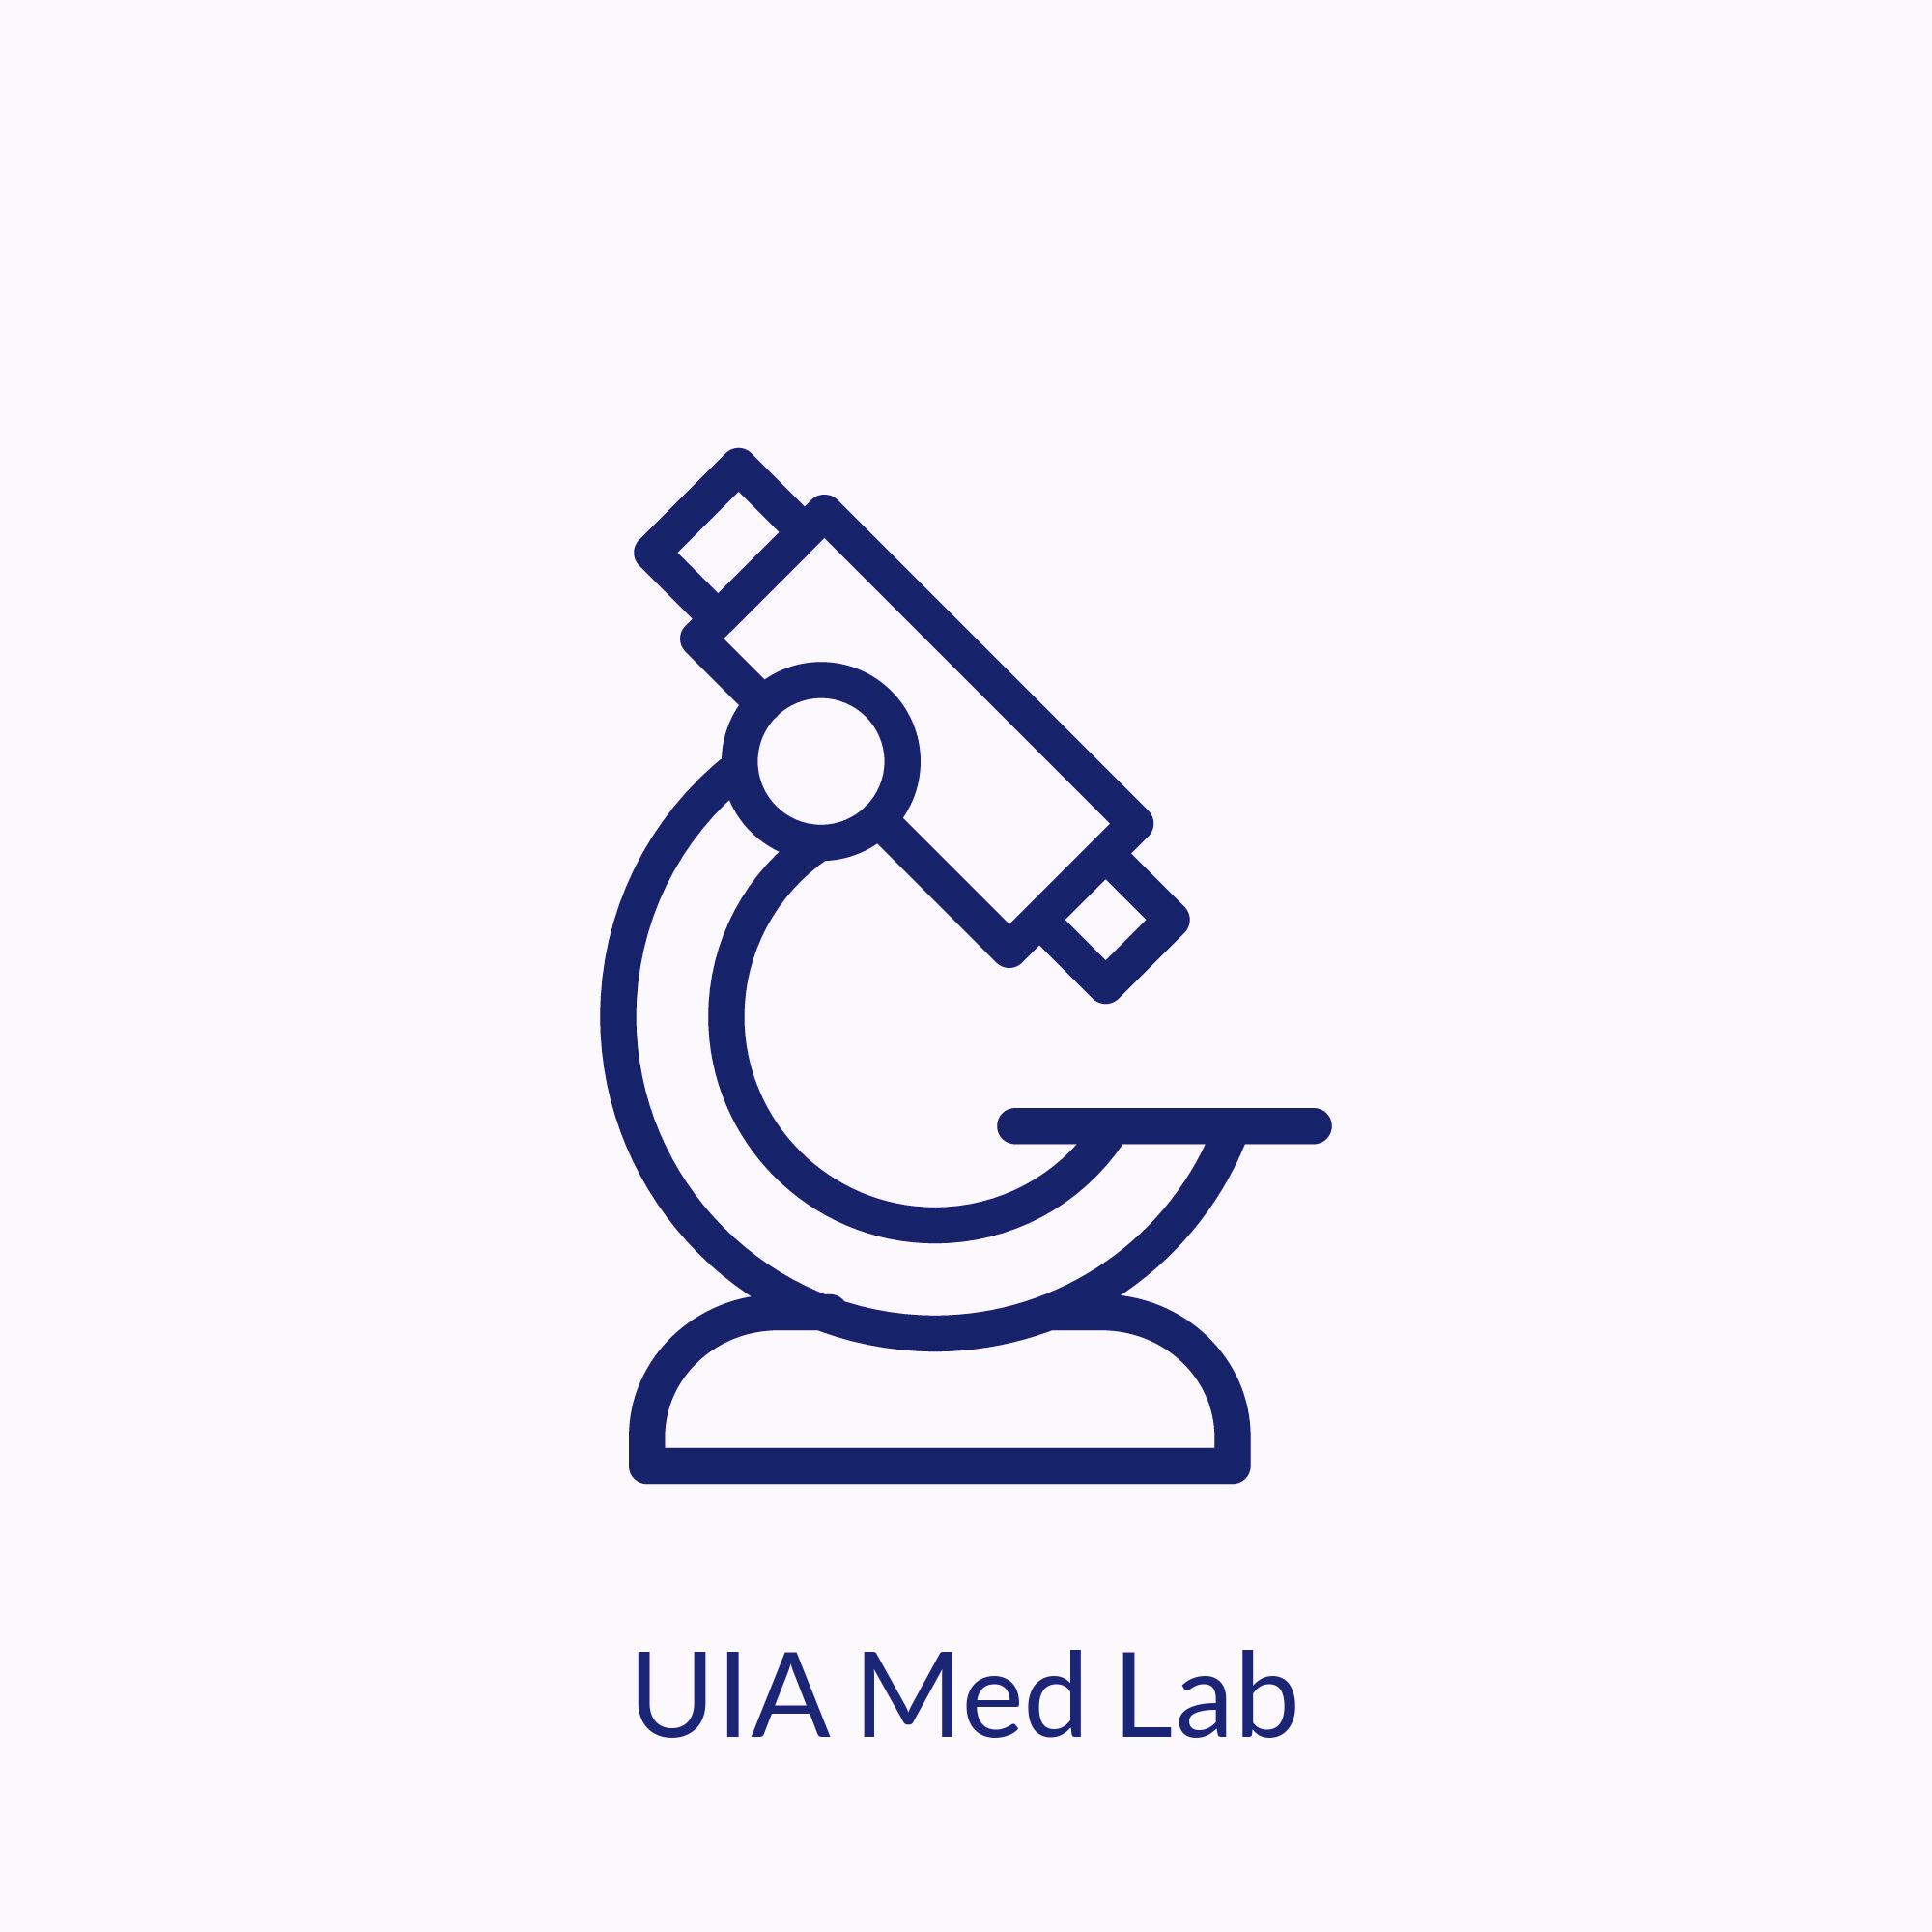 UIA Med Lab